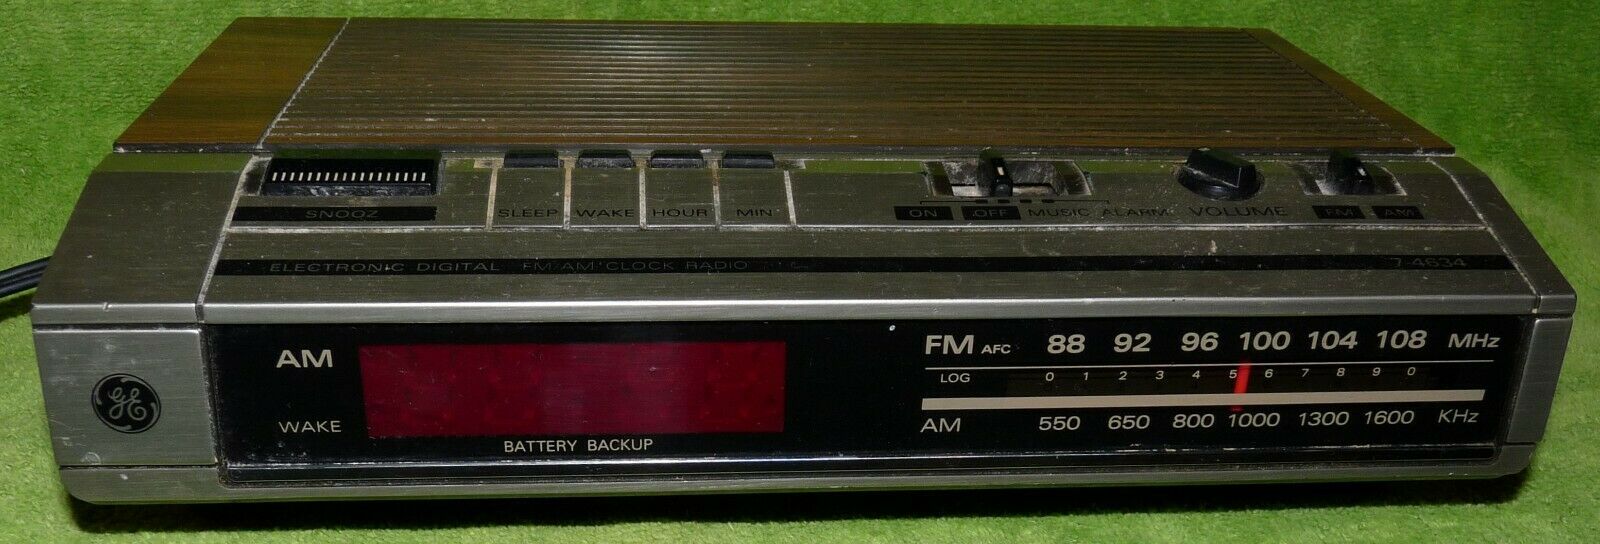 Vintage General Electric Digital Alarm Clock Radio Model 7-4634B AM/FM, Works